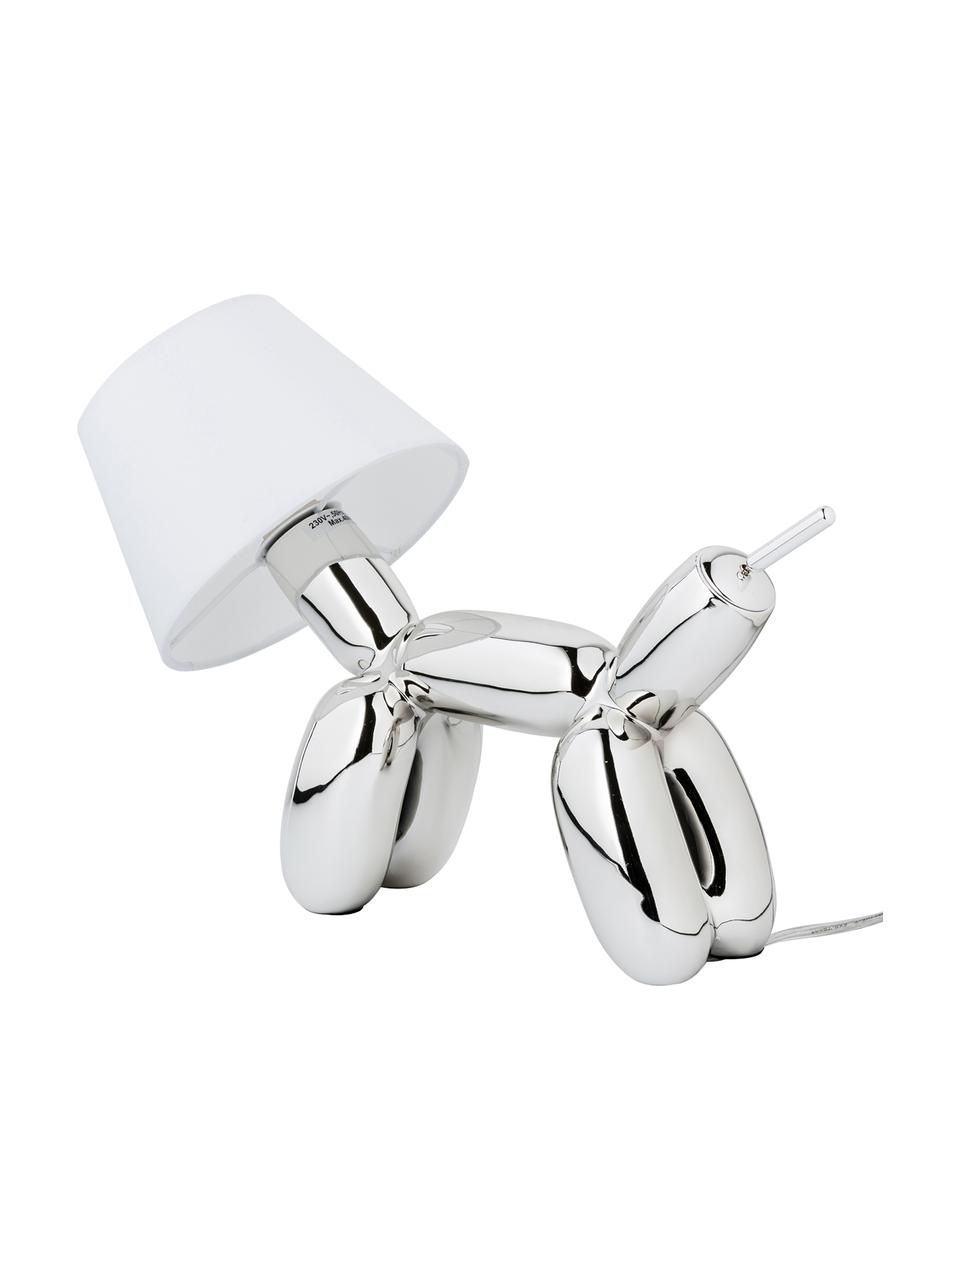 Design tafellamp Doggy, Lampvoet: kunsthars, Chroomkleurig, wit, 40 x 30 cm